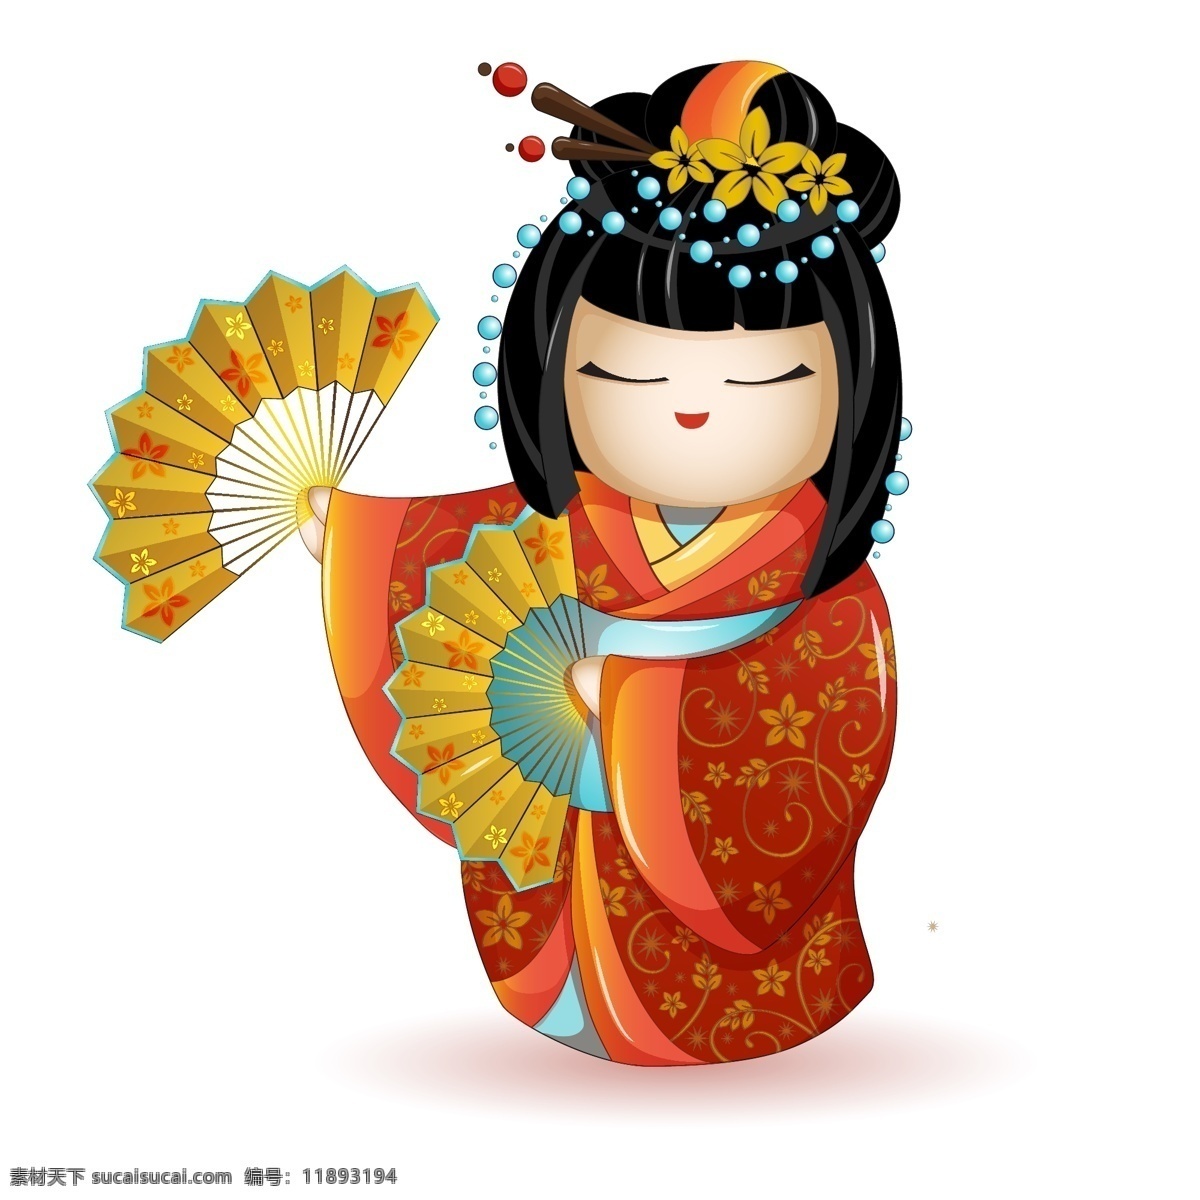 日本娃娃 日本 娃娃 娃娃头 和服 和服娃娃 日本美女 和服美女 日本女人 人物图库